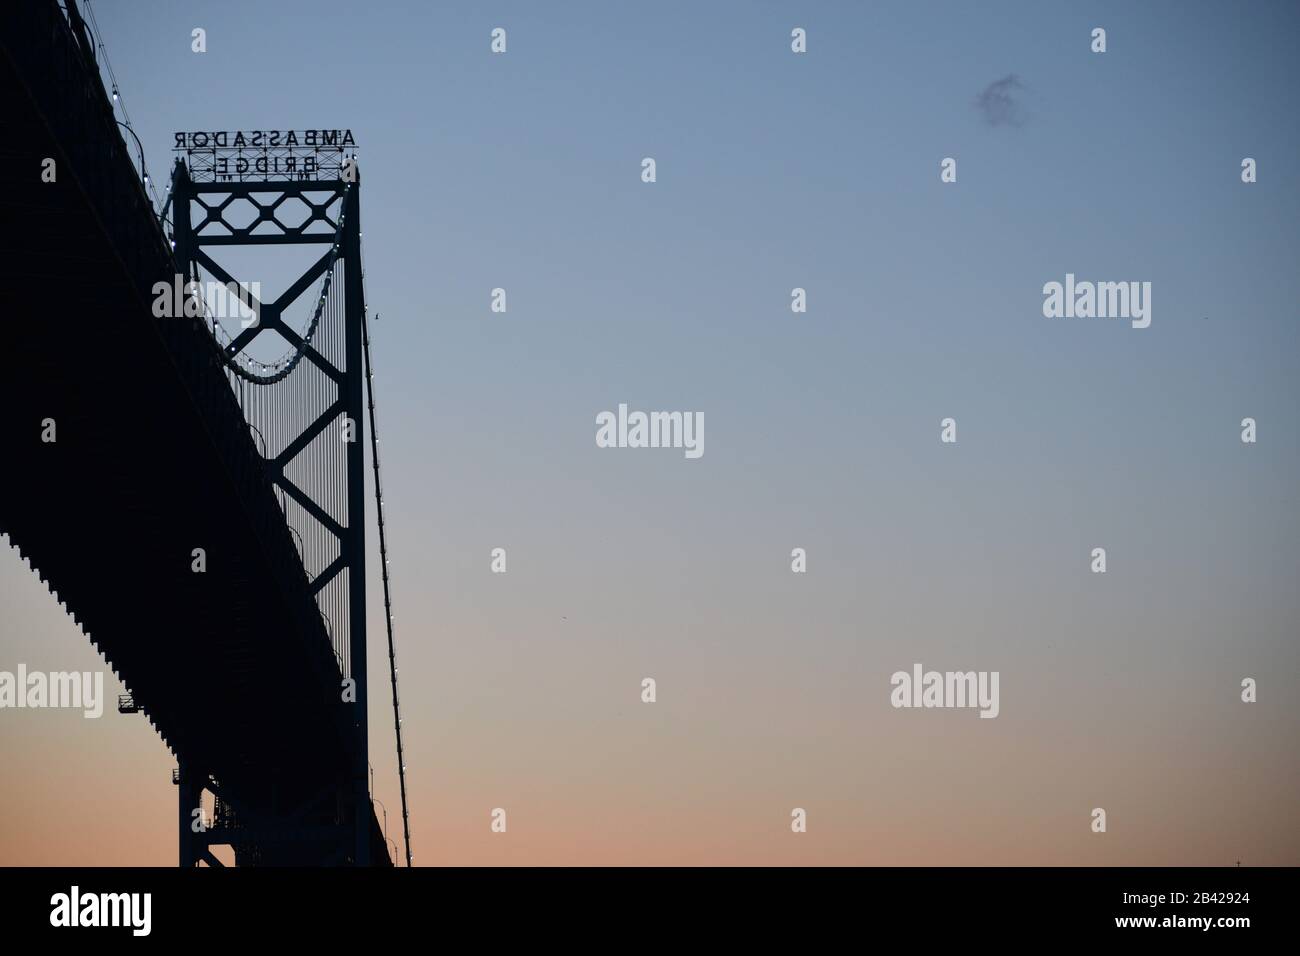 Blick auf die Ambassador-Brücke von Windsor, Ontario. Detroit - Grenzübergang Kanada bei Sonnenuntergang. Platz für Text am Himmel. Stockfoto